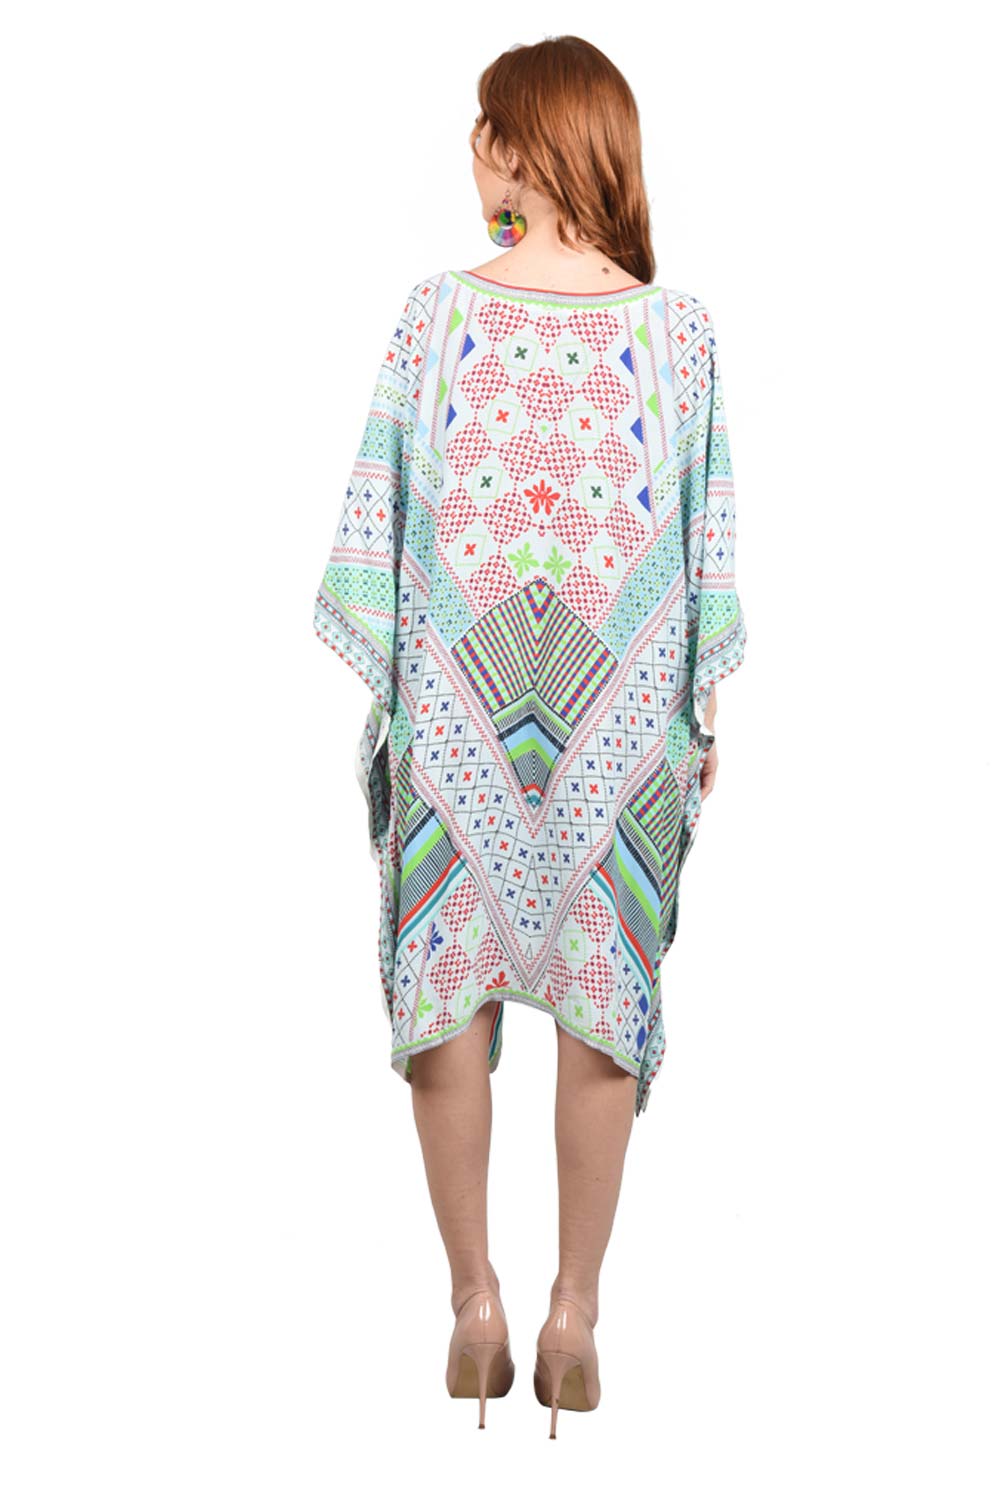 Jantar Mantar Short tribal Geometrical Kaftan - Silk Kaftan dress